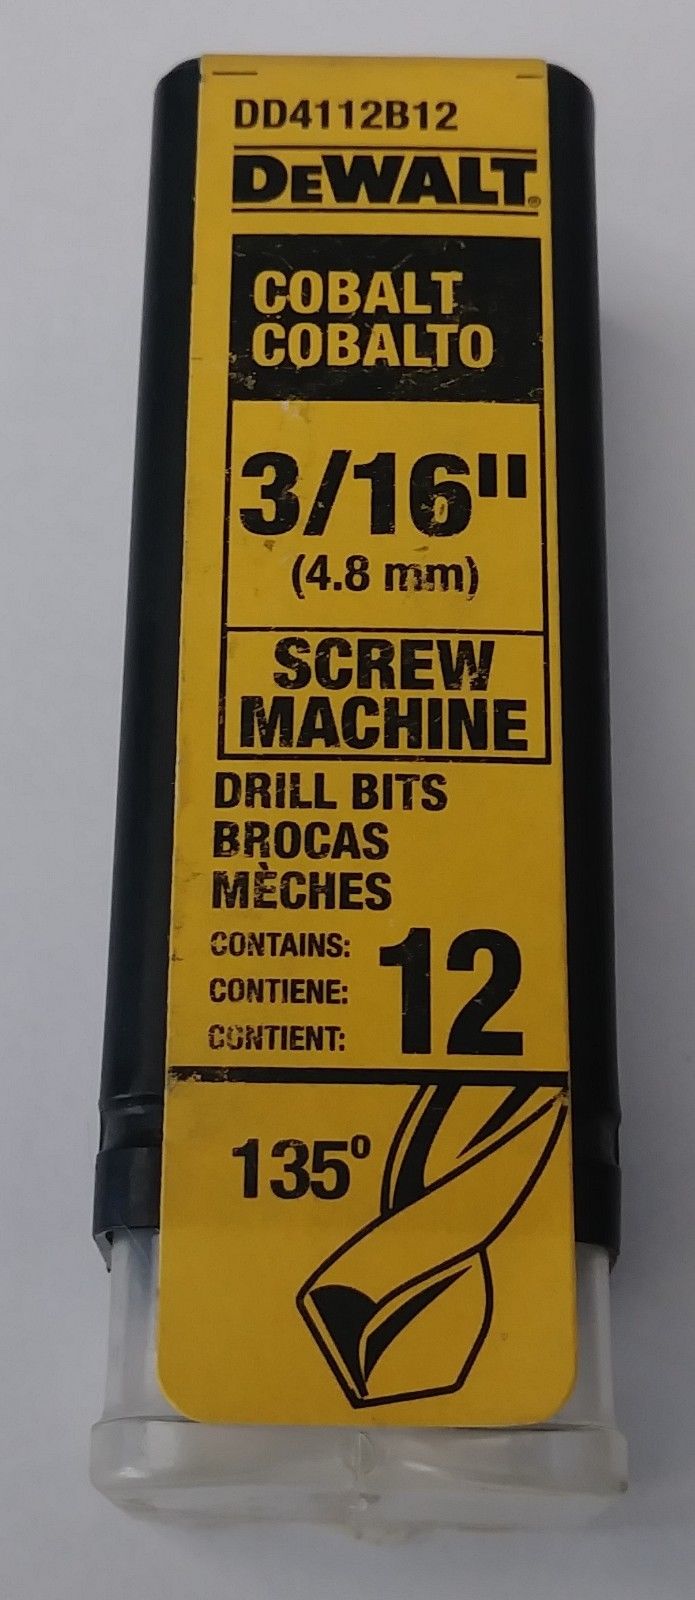 DeWalt DD4112B12 3/16" Cobalt Screw Machine Drill Bit 12 Bits Germany